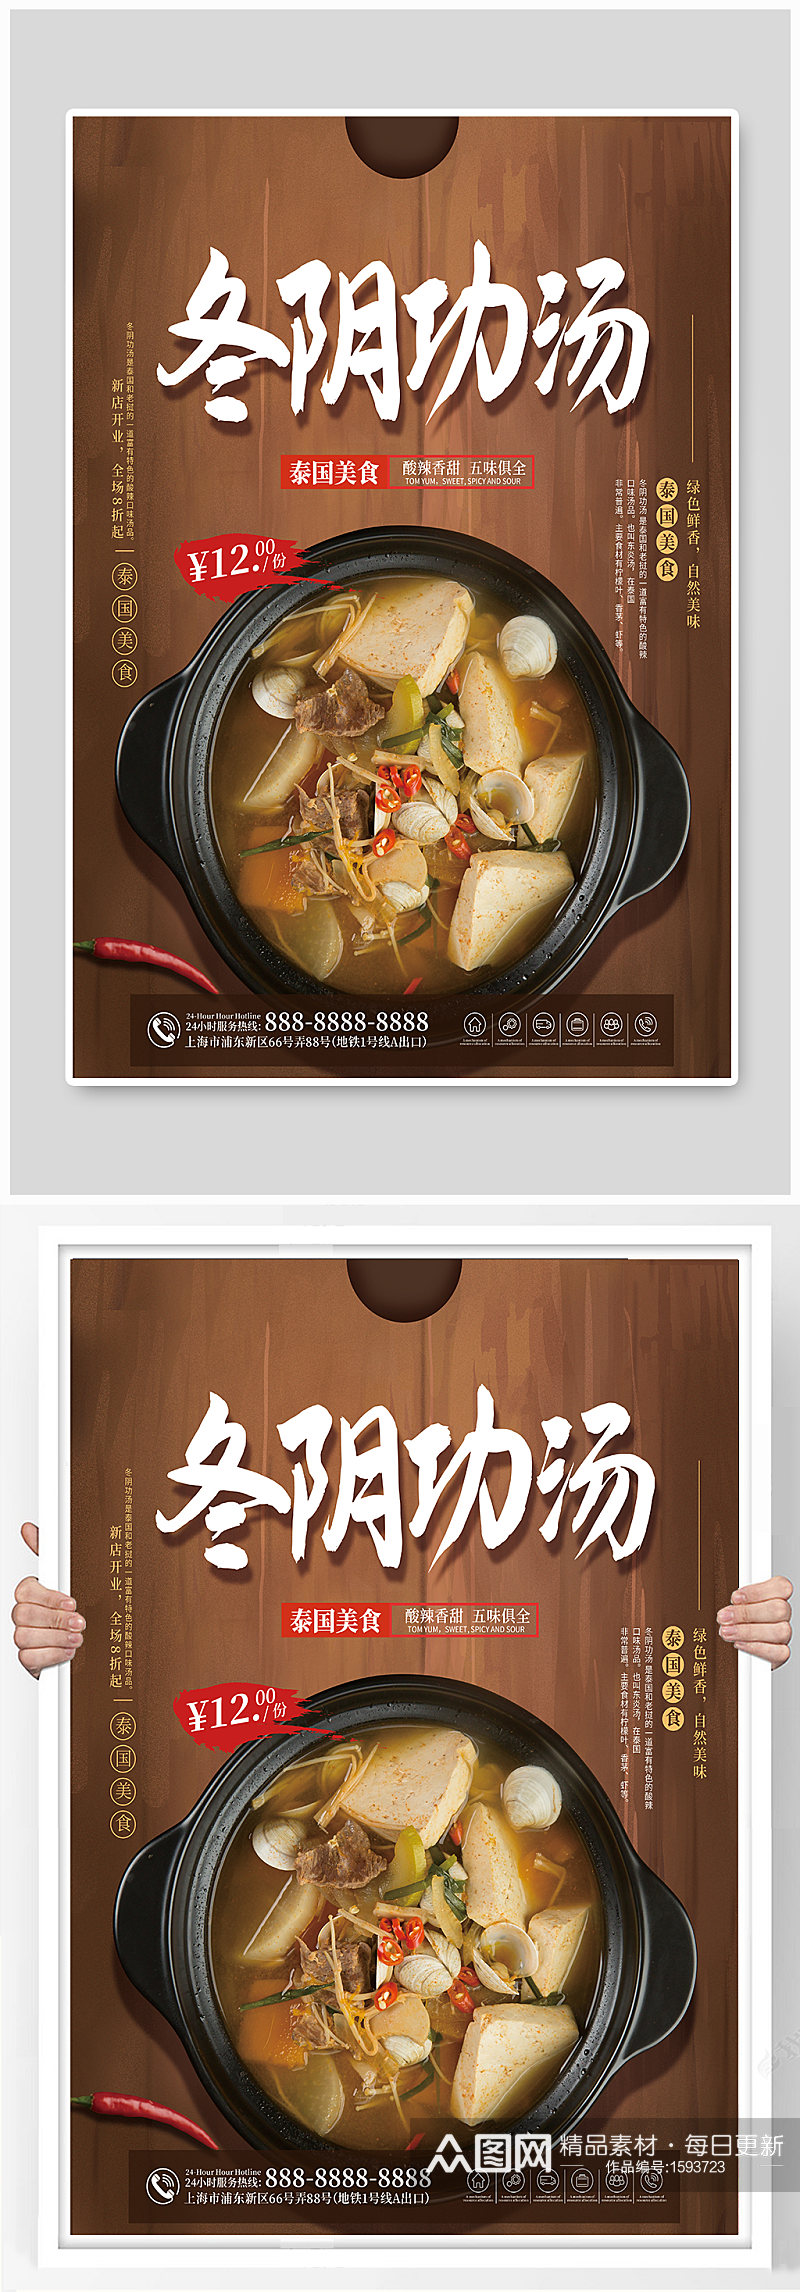 冬阴功汤餐厅东南亚美食海报素材